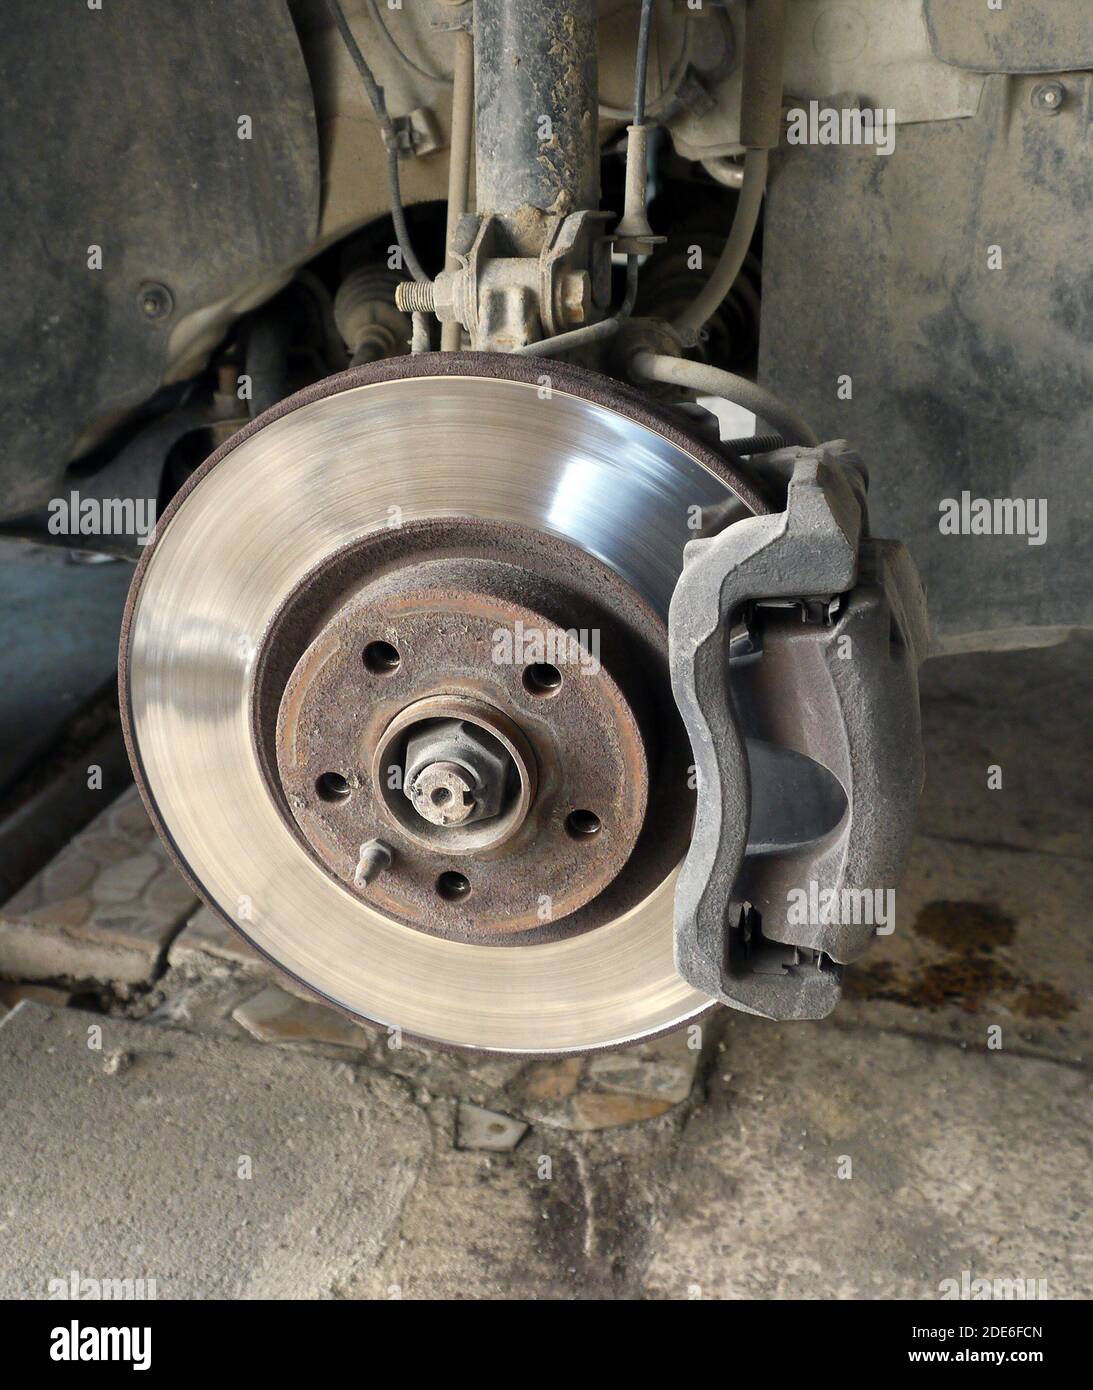 frenos de disco rueda delantera un mecánico de automóvil, discos de freno de automóvil Fotografía stock - Alamy